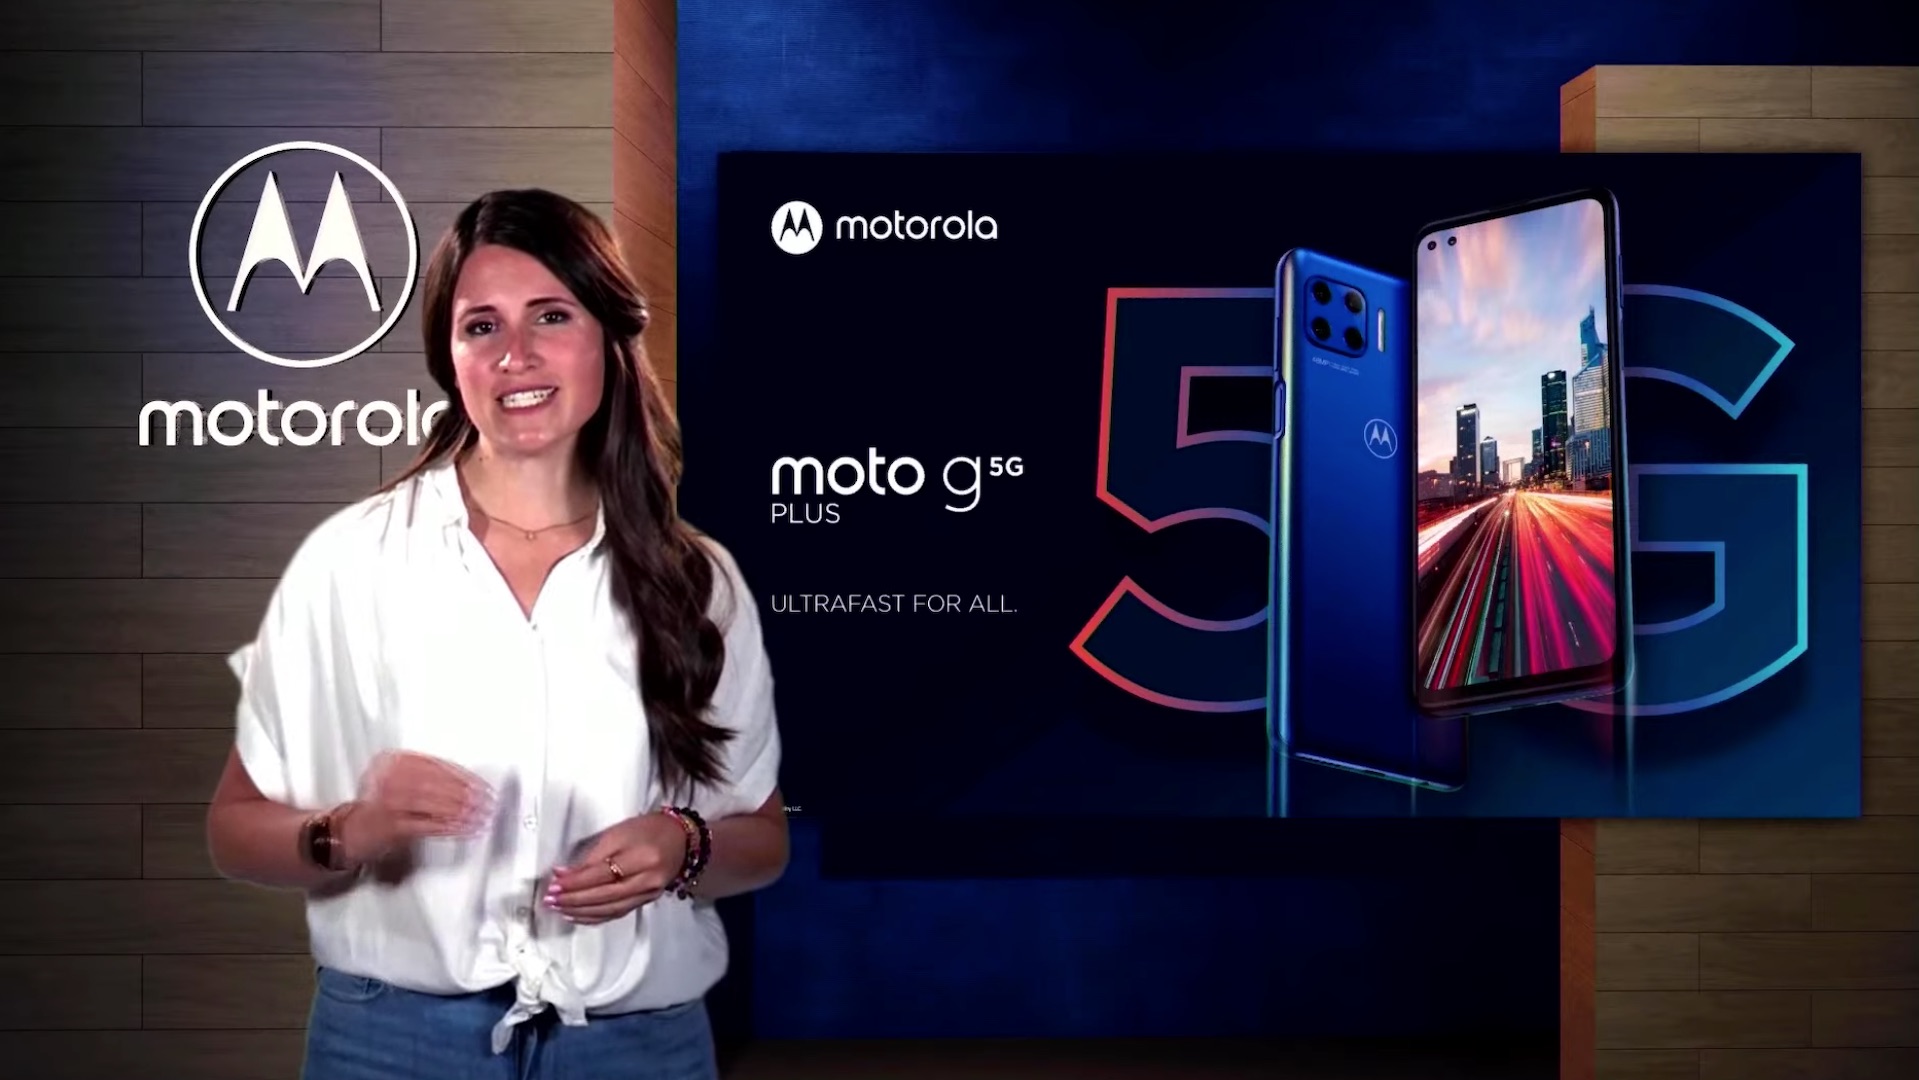 Rimelig 5G-mobil fra Motorola